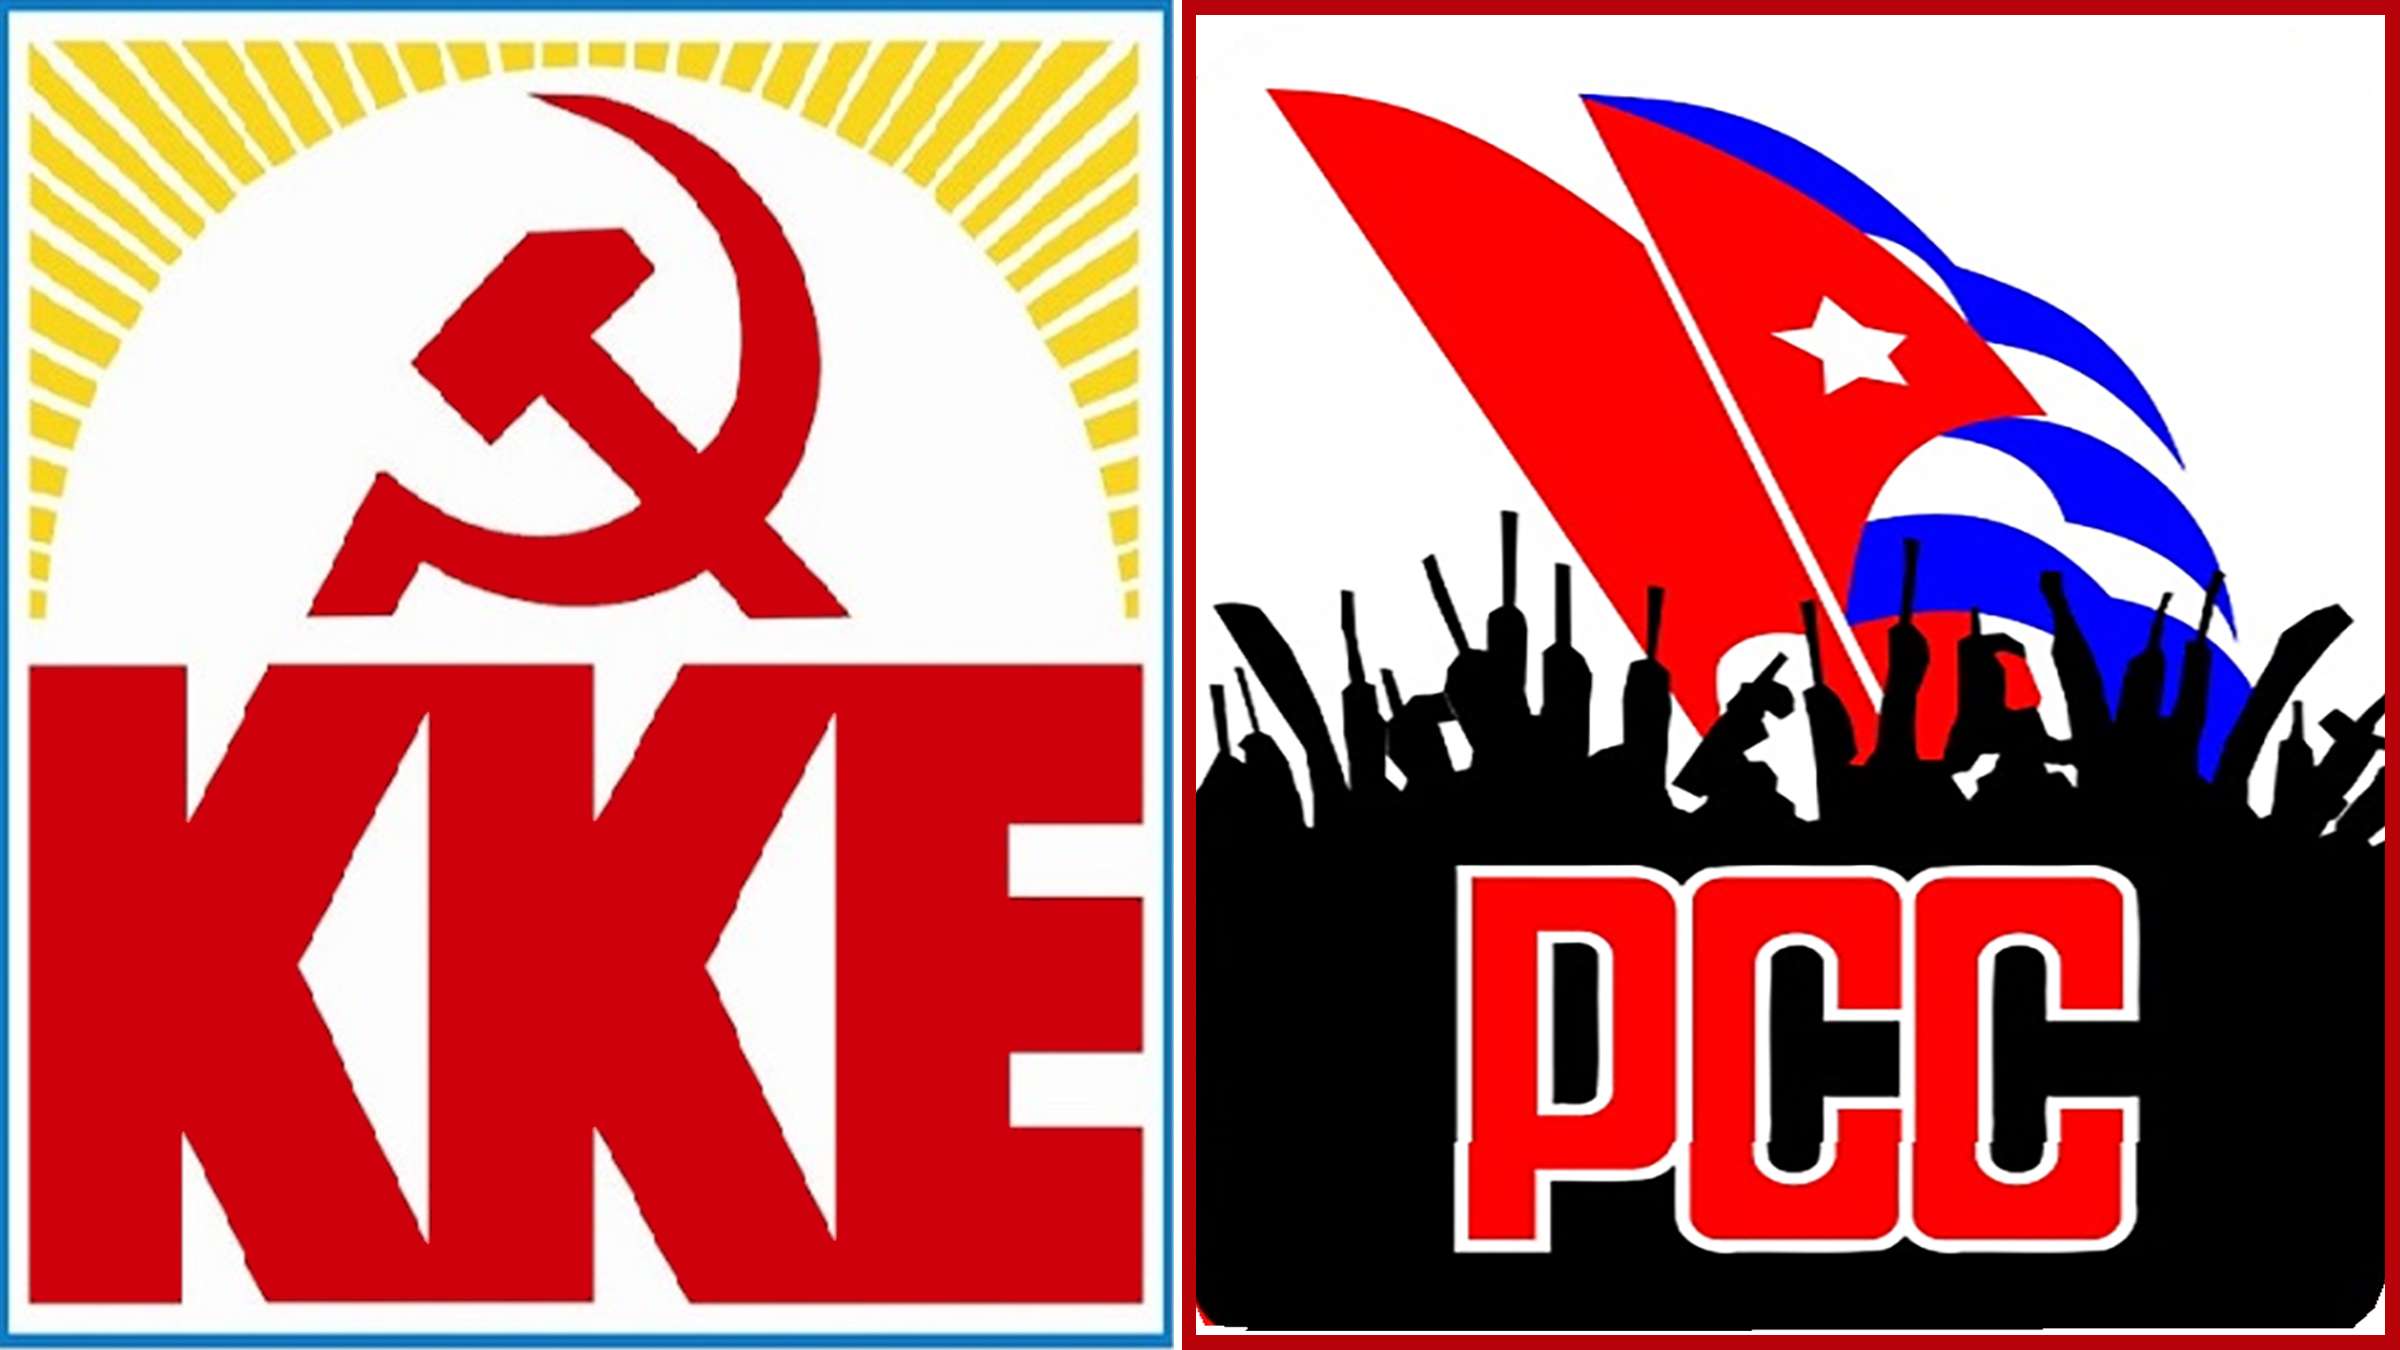 KKE PCC